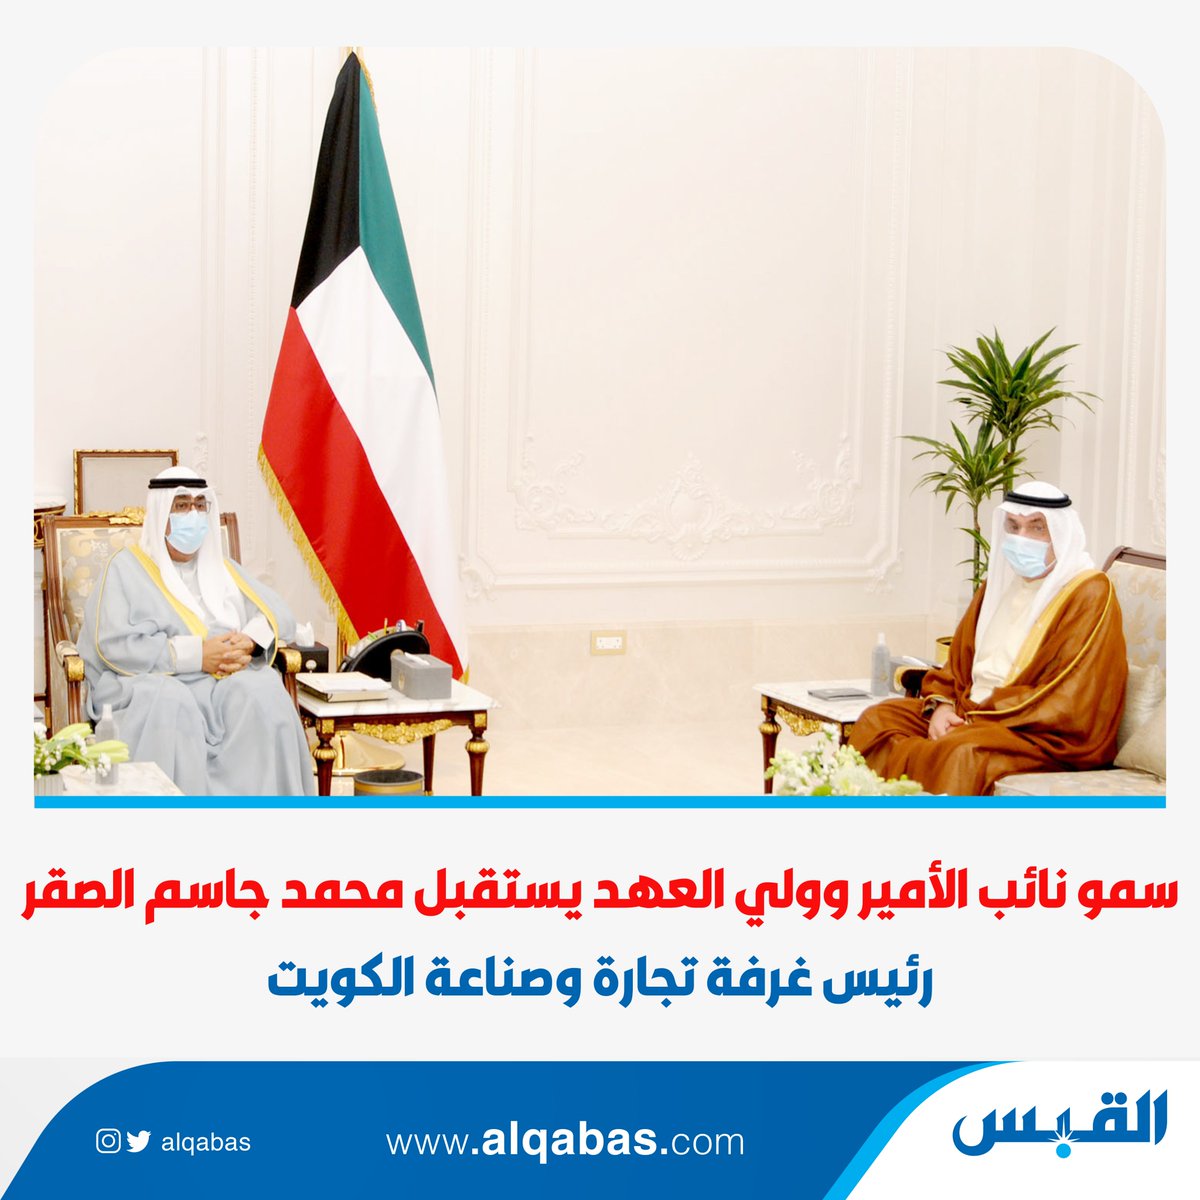 سمو نائب الأمير وولي العهد يستقبل محمد جاسم الصقر رئيس غرفة تجارة وصناعة الكويت